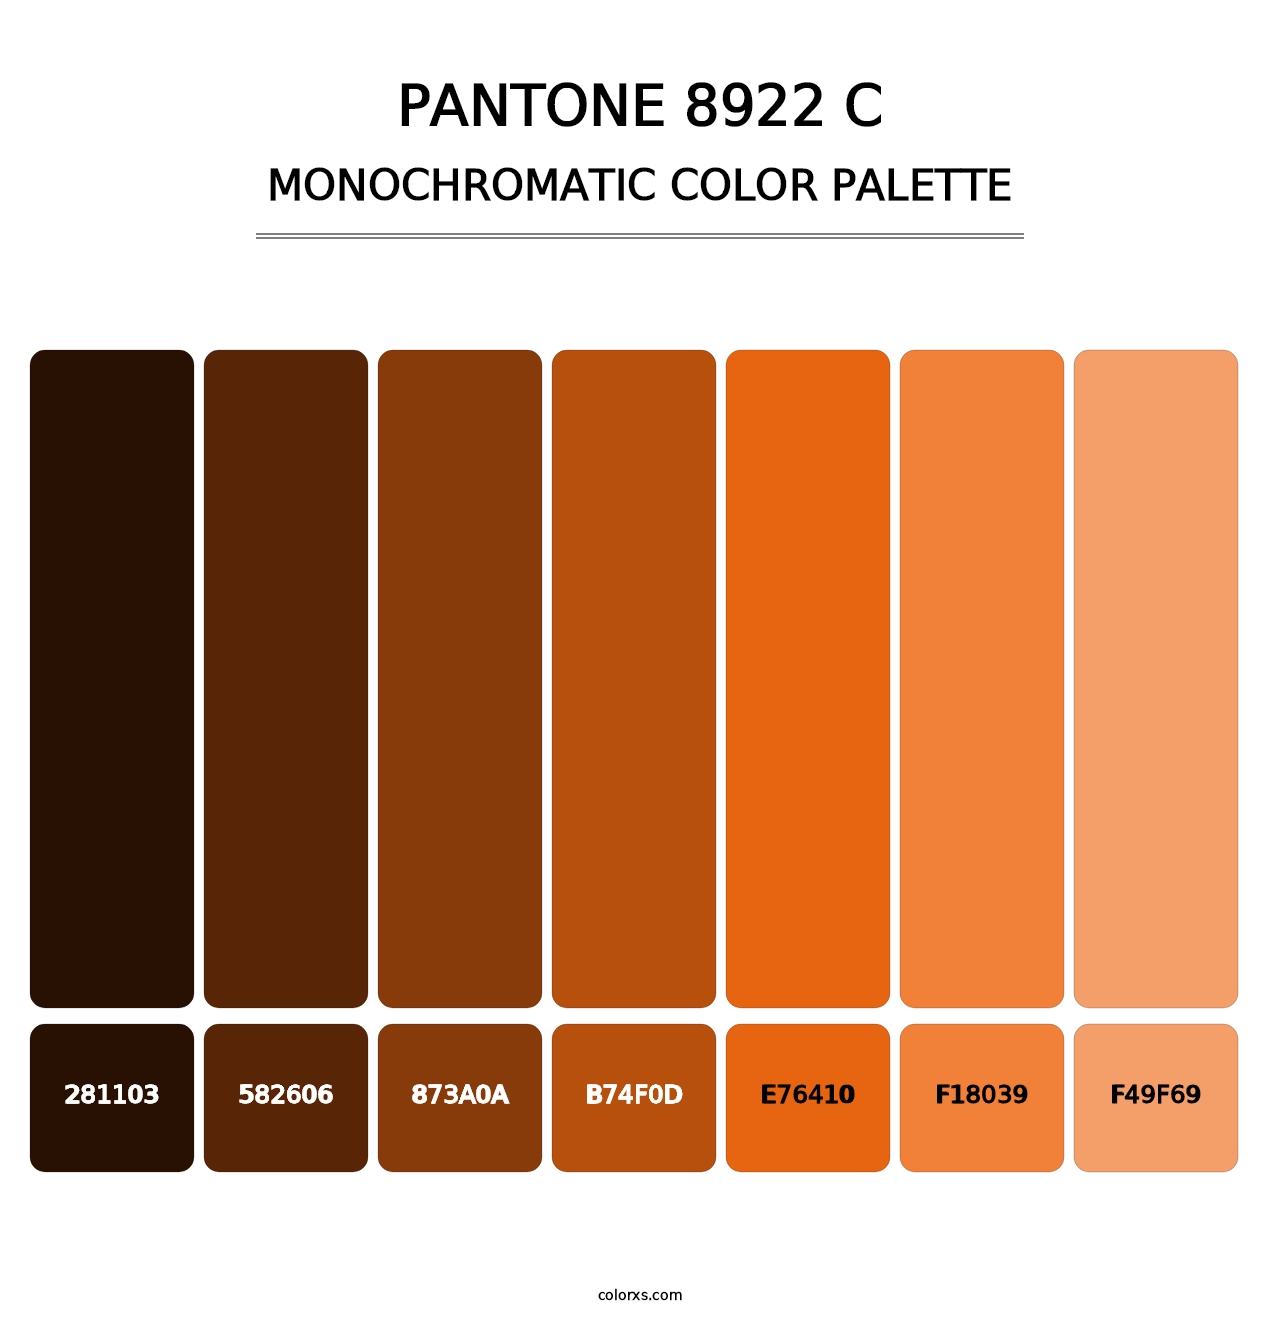 PANTONE 8922 C - Monochromatic Color Palette